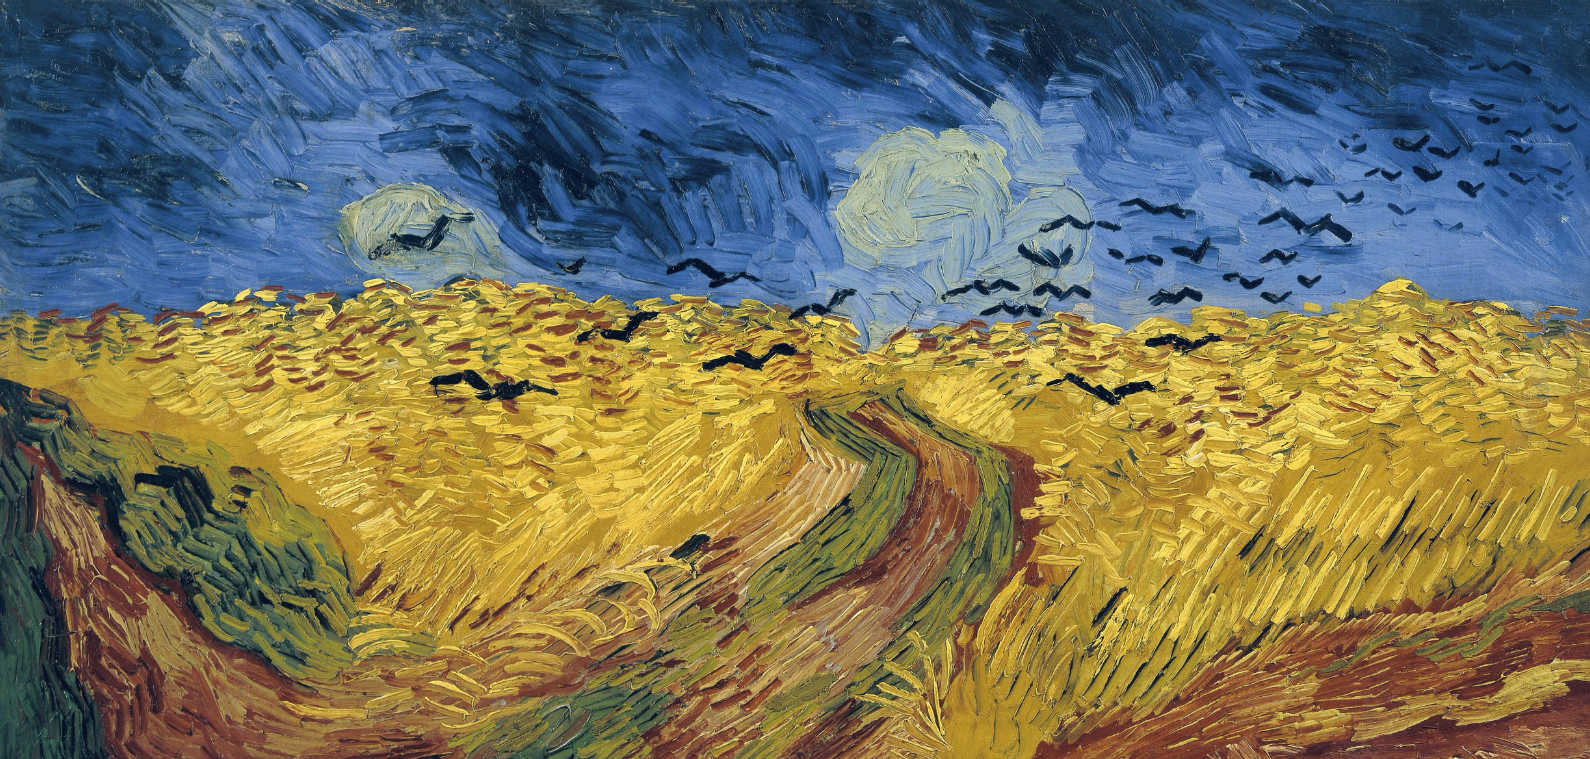 "Cháy vé" tại triển lãm Van Gogh, có người vượt 1.000km vẫn không được vào xem: Nhìn lại cuộc đời bạc mệnh của "thiên tài đau khổ" và những tranh cãi về bức tranh cuối cùng - Ảnh 3.